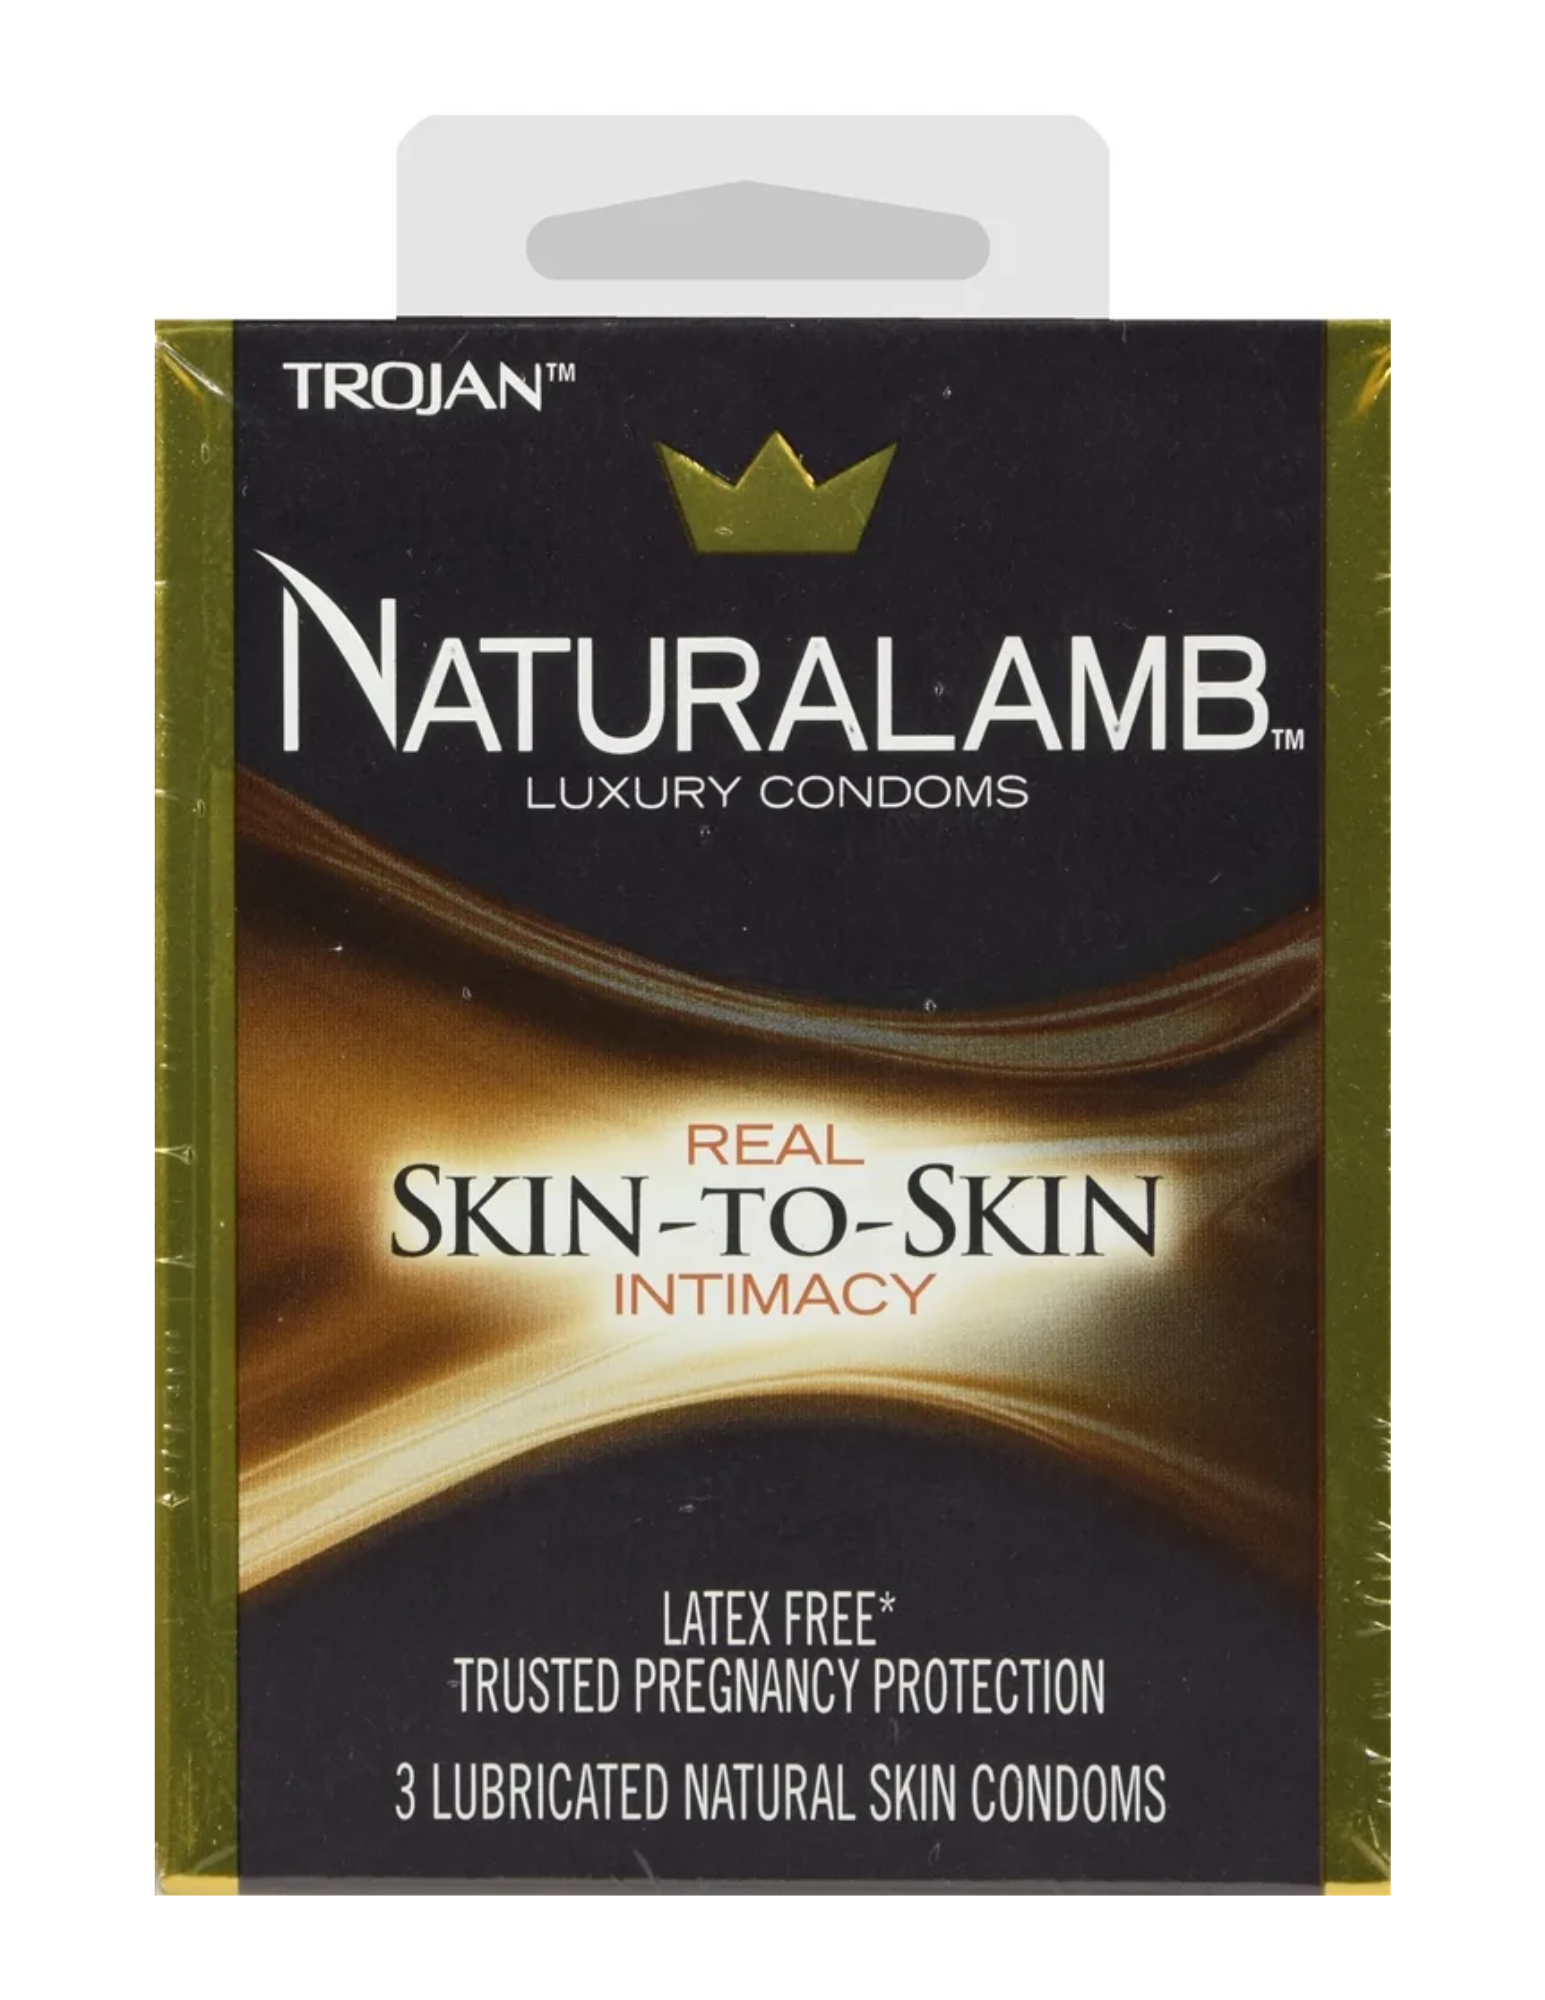 Trojan Naturalamb Luxury Condoms 3 pack in box.